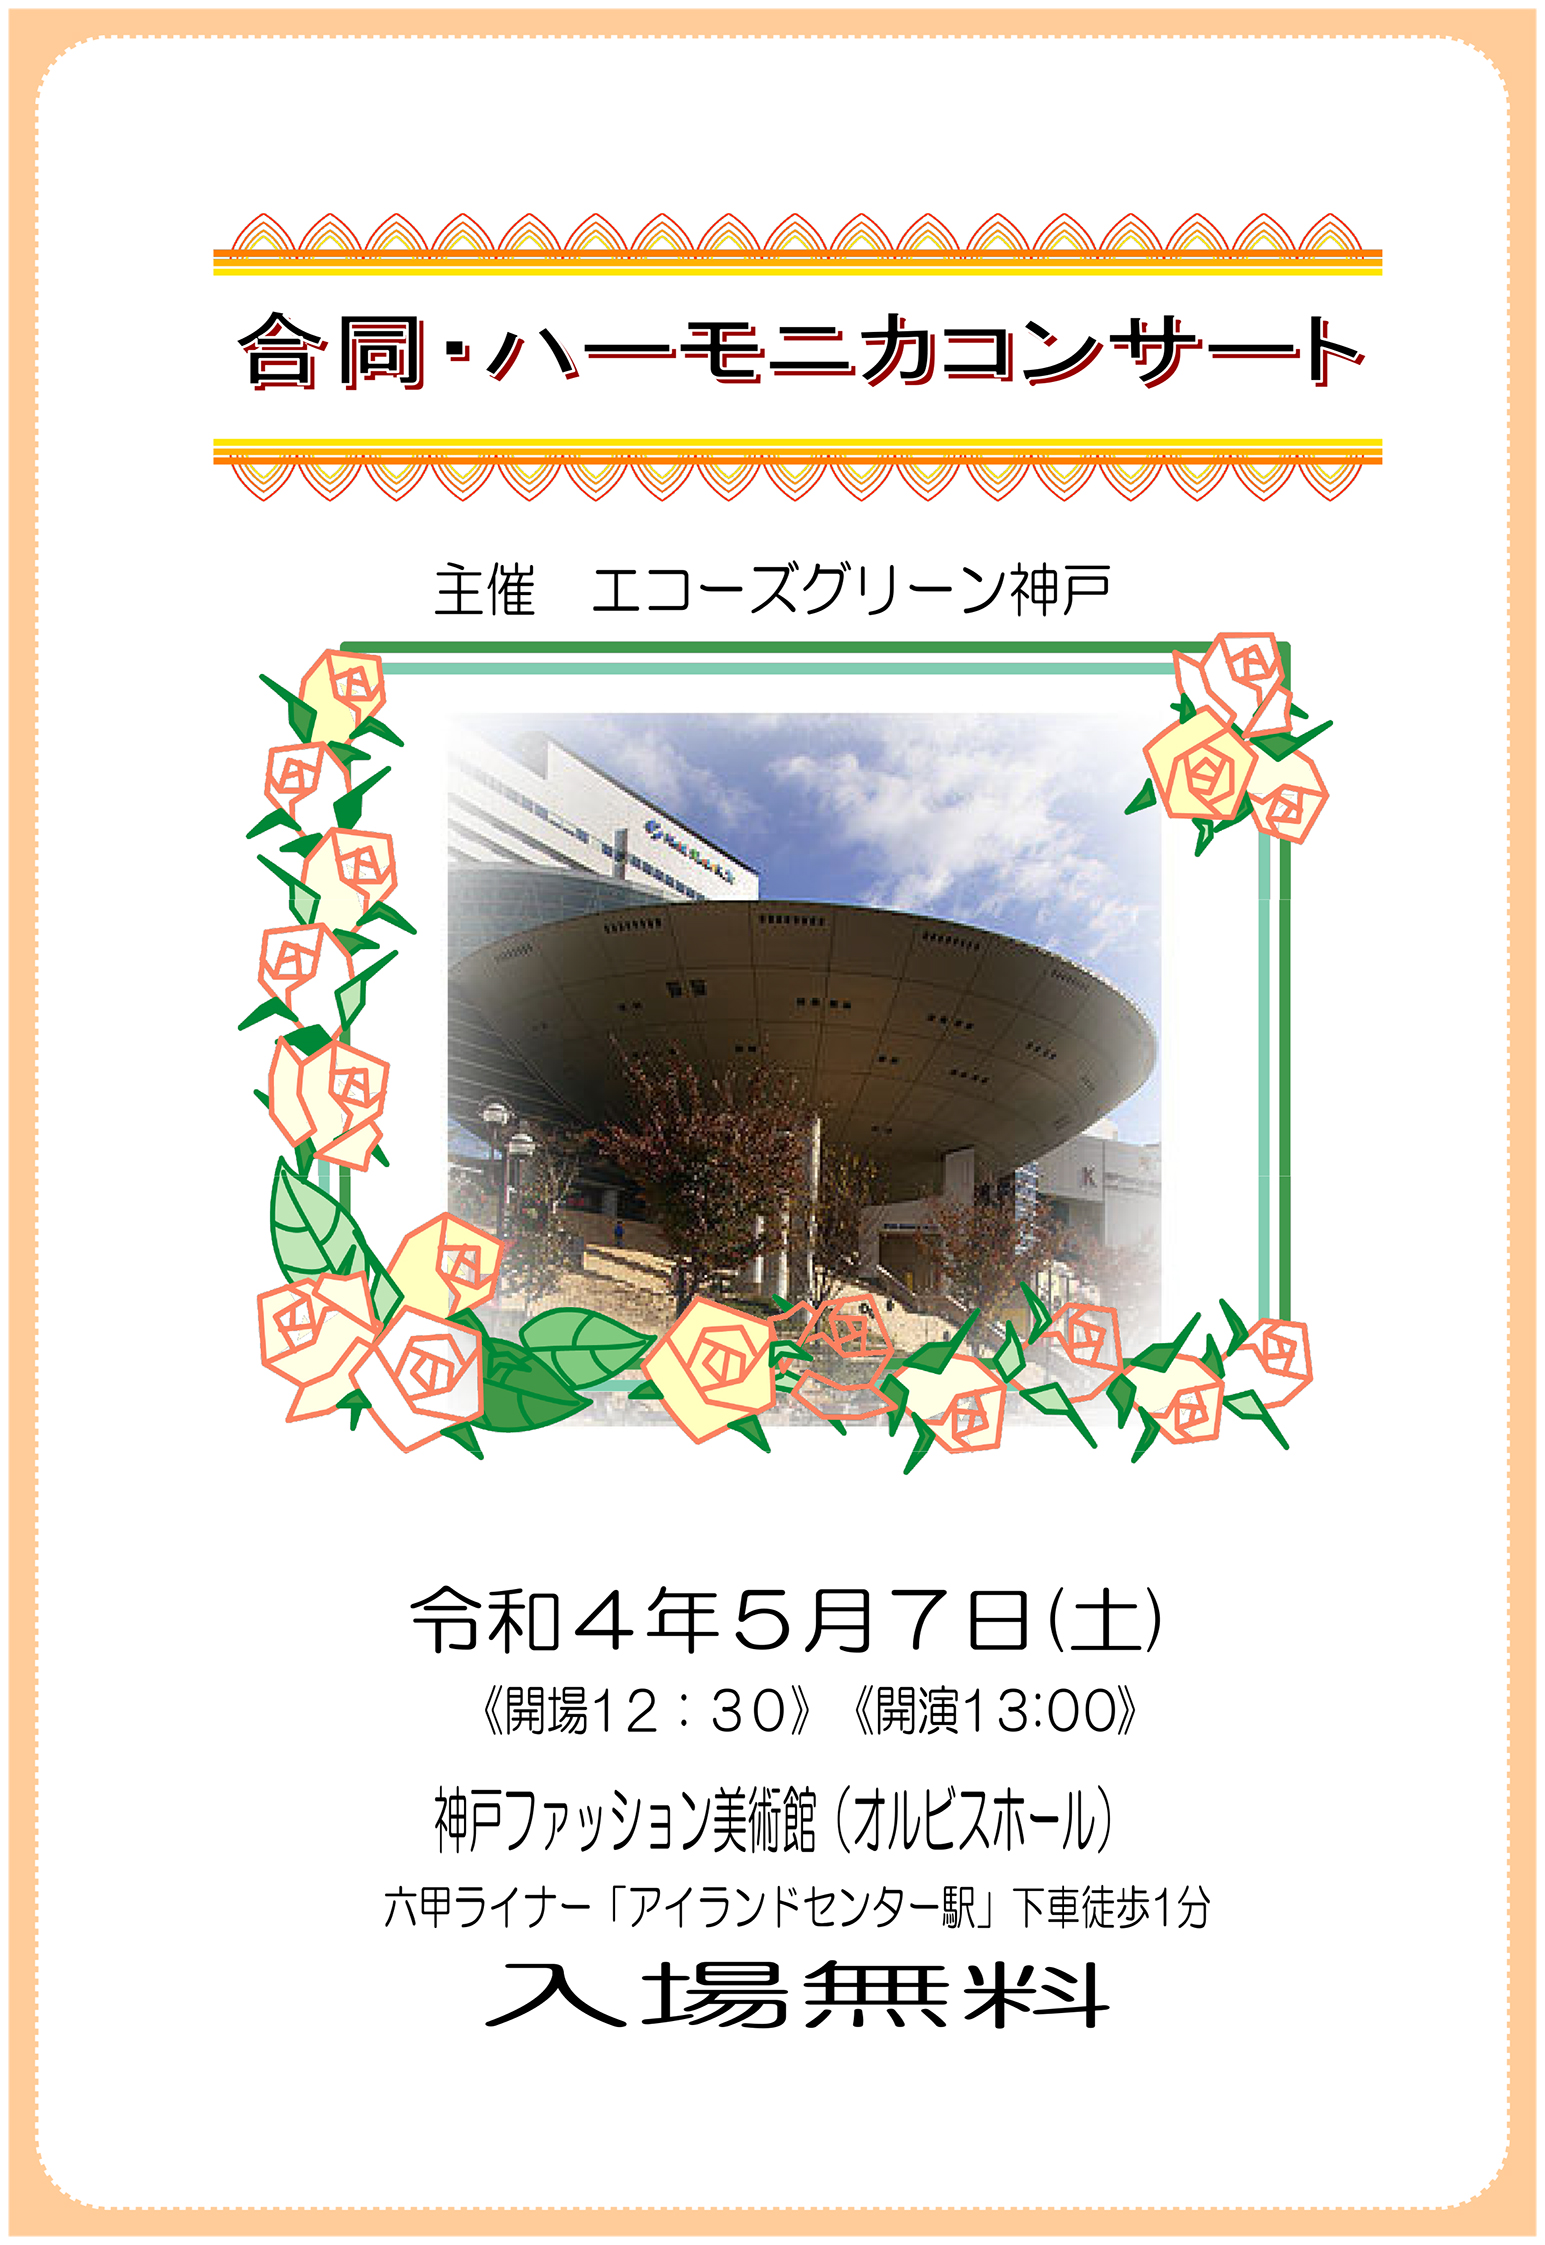 【オルビスホール情報】5/7(土)「エコーズグリーン神戸 ハーモニカコンサート」開催！